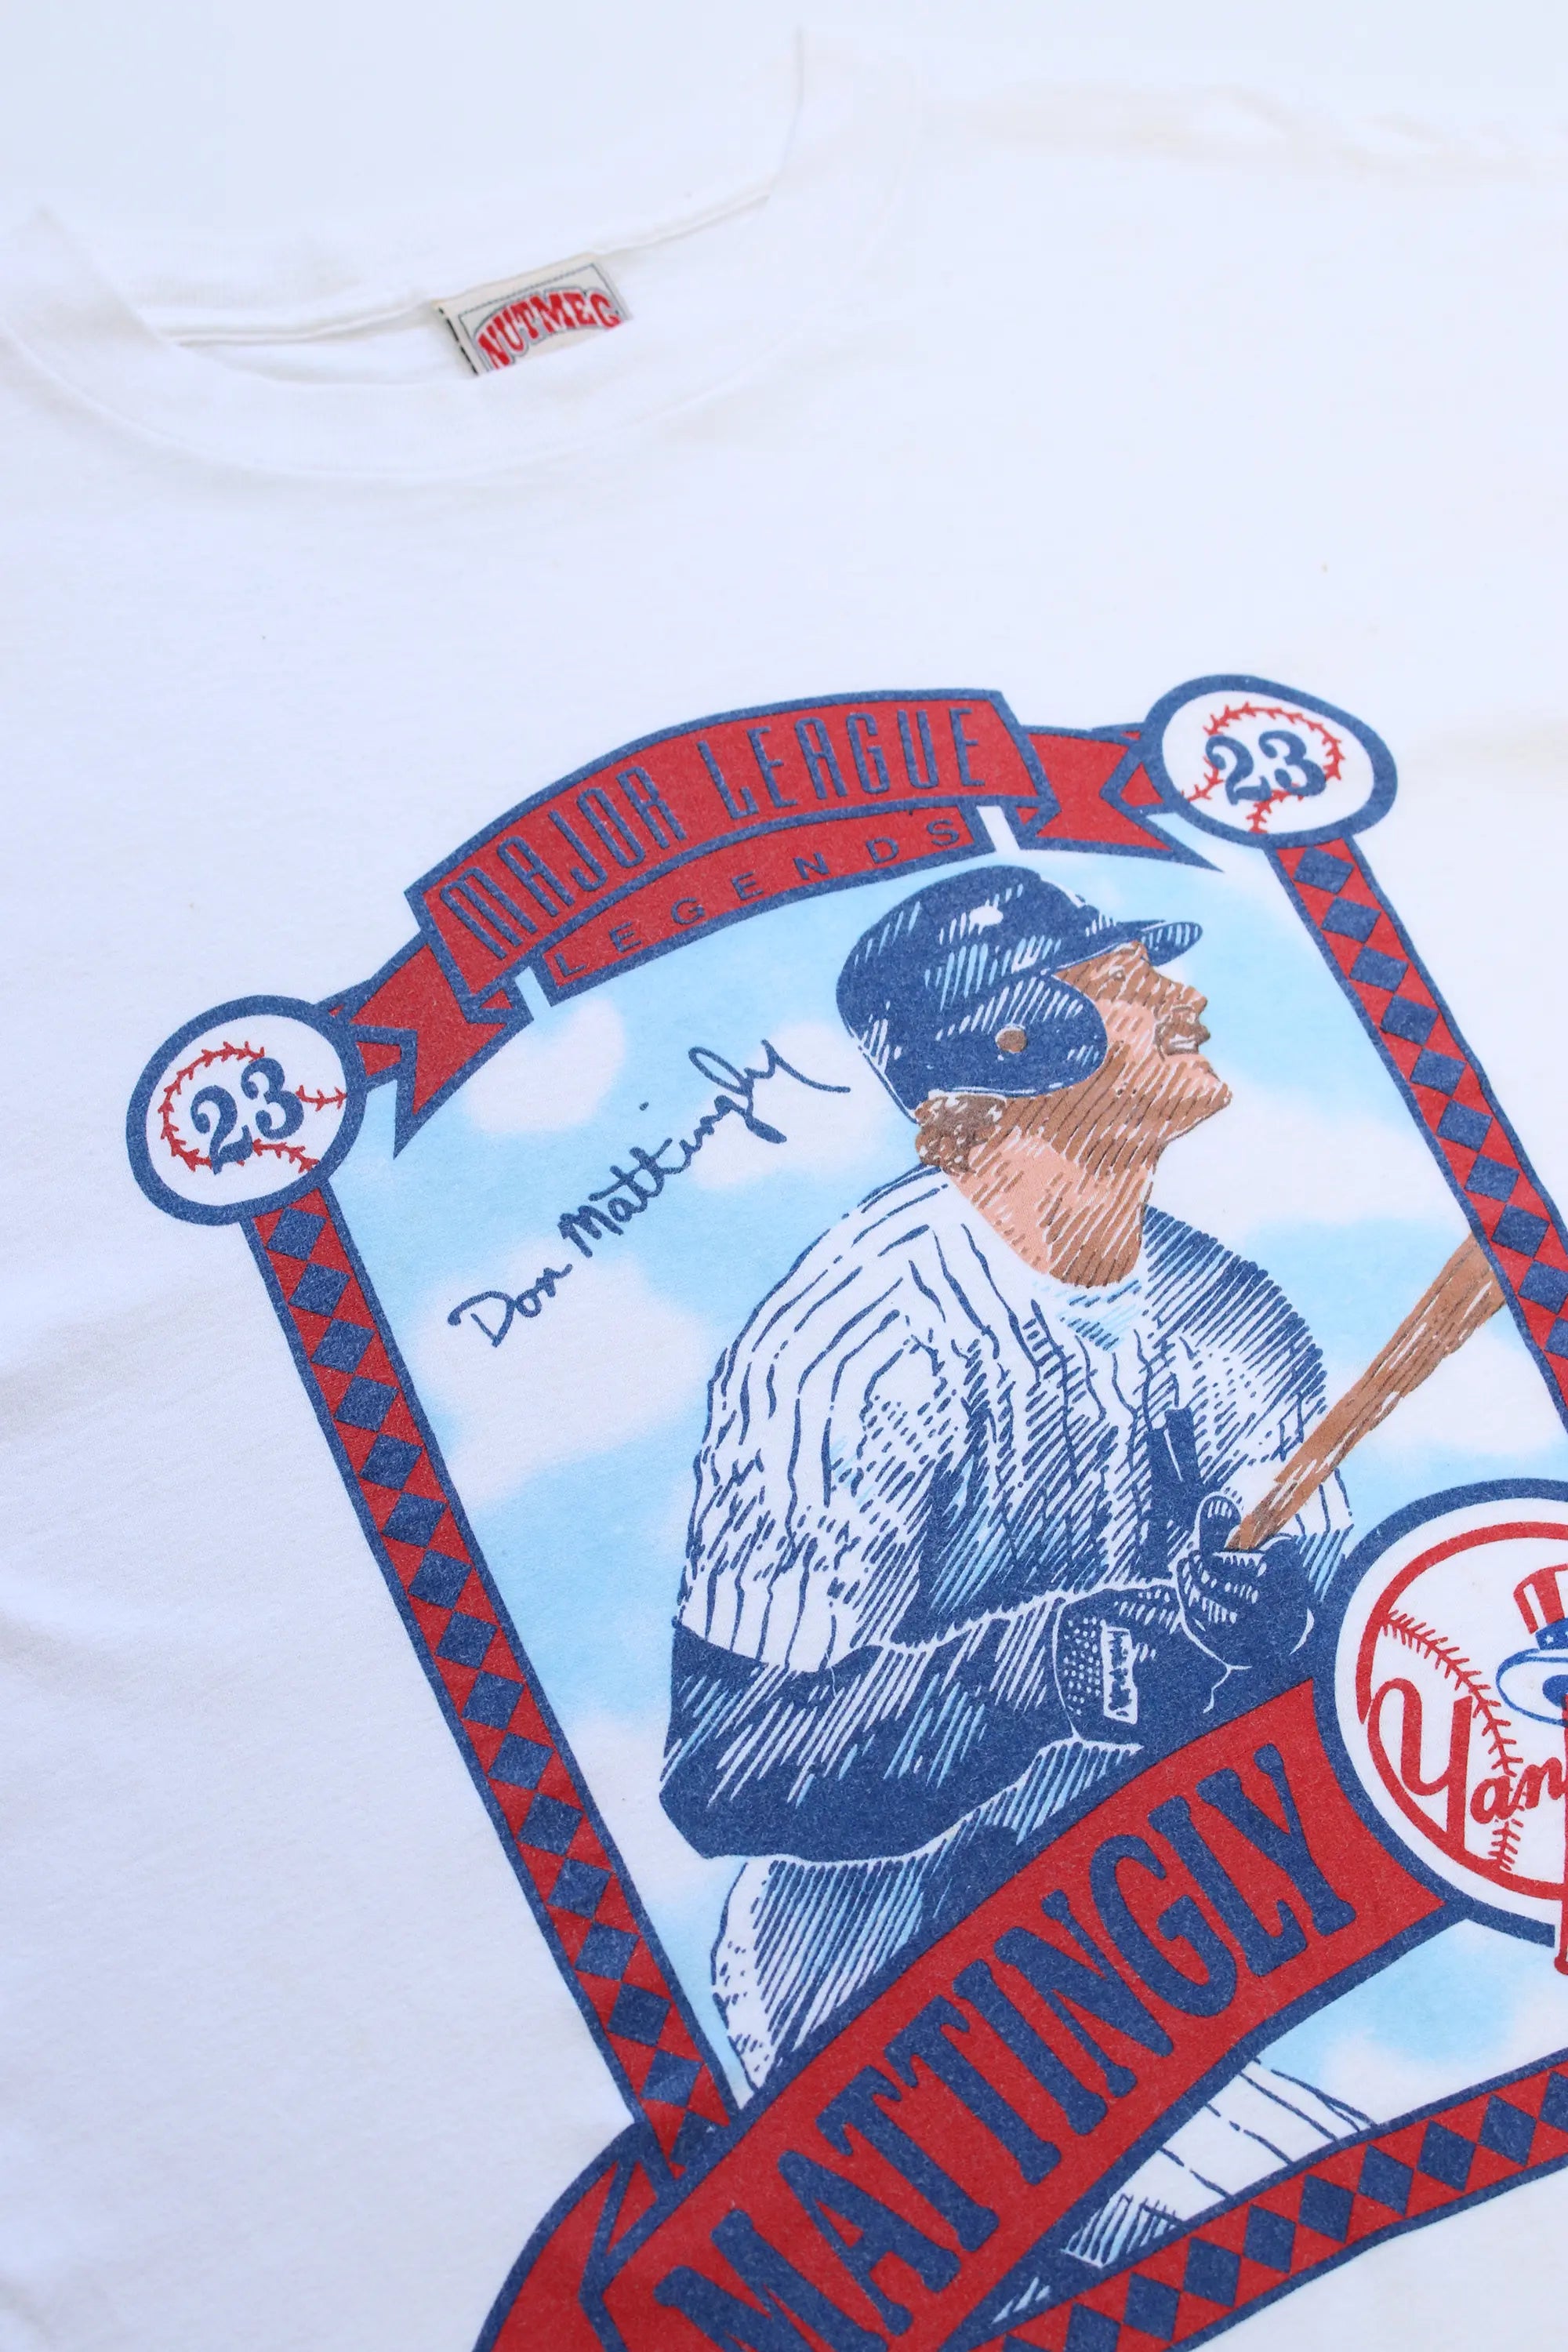 Nutmeg 89' Yankees T-Shirt